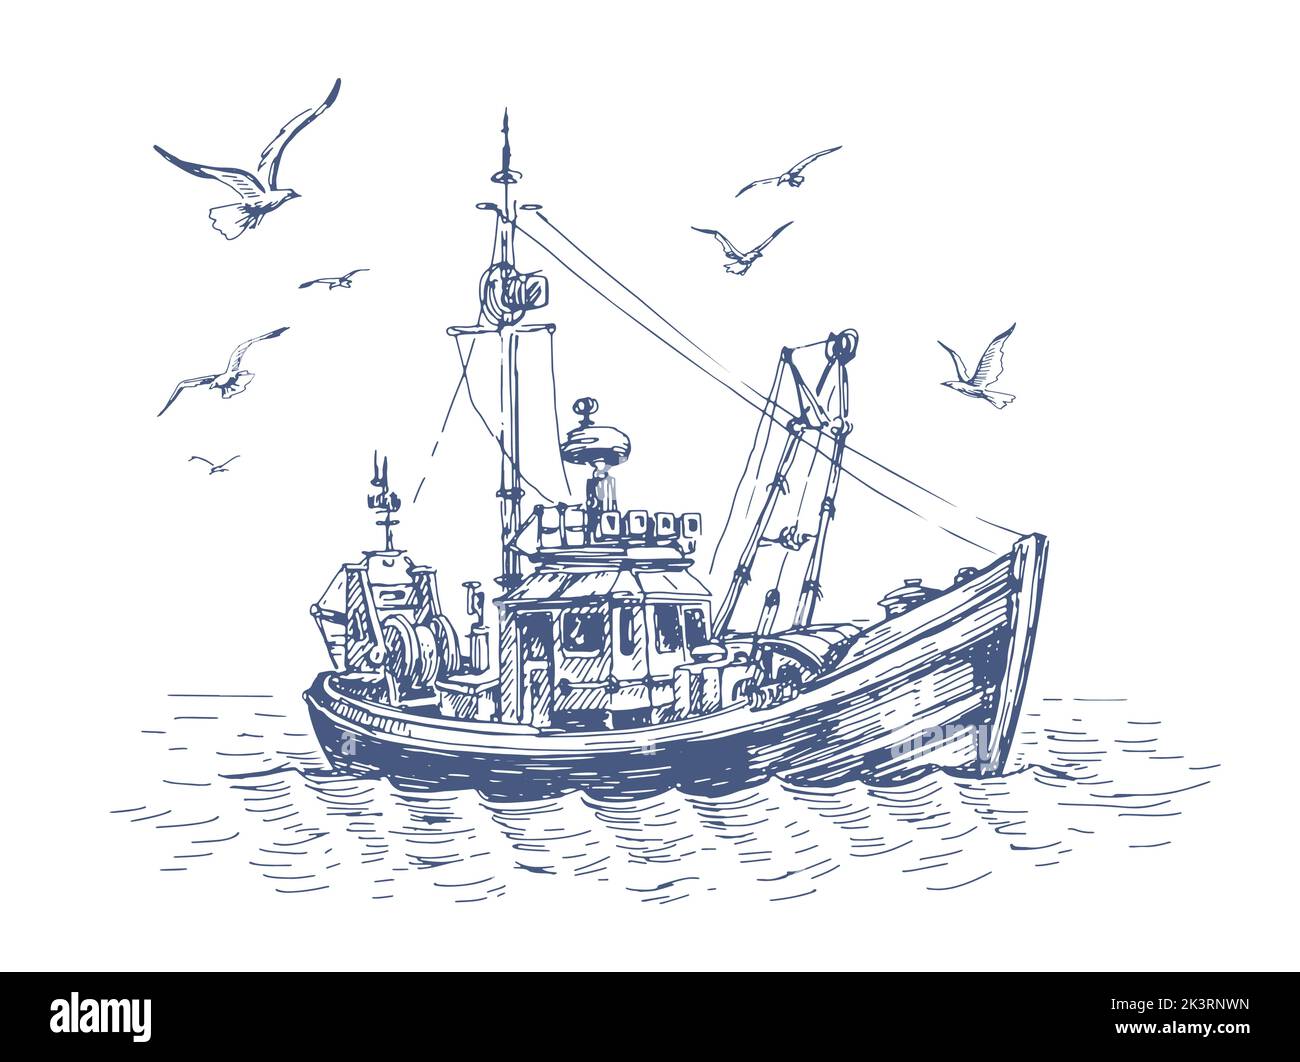 Kleines Fischerboot im Meer. Möwen und Schiff, Schiff auf dem Wasser. Seascape, Fischerei Skizze Vektor-Illustration Stock Vektor